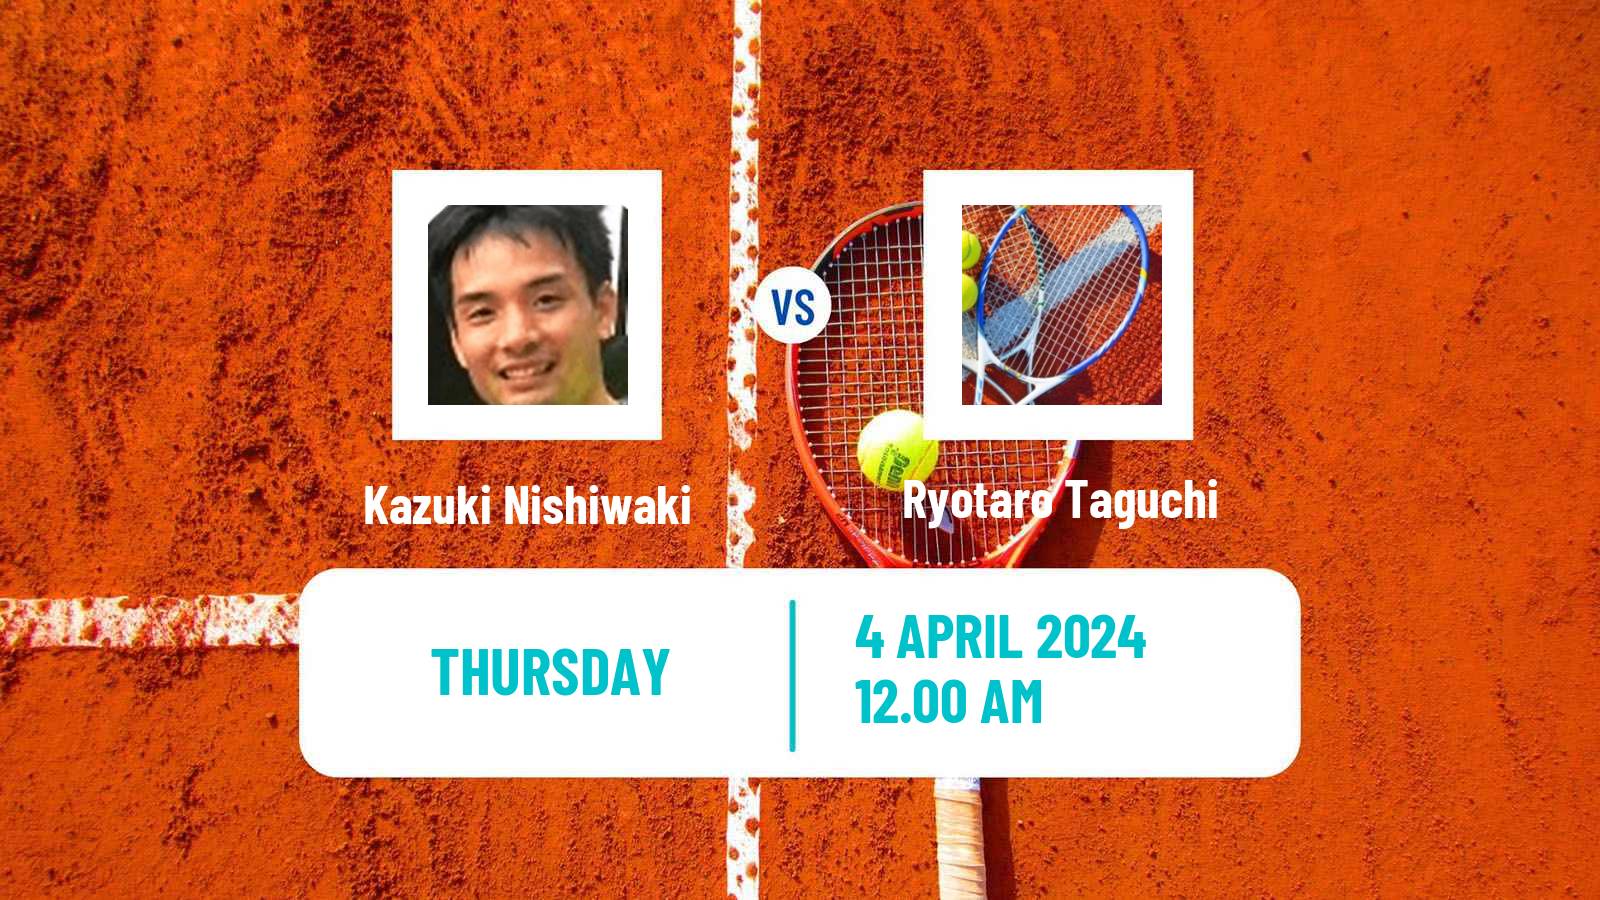 Tennis ITF M15 Kashiwa Men Kazuki Nishiwaki - Ryotaro Taguchi